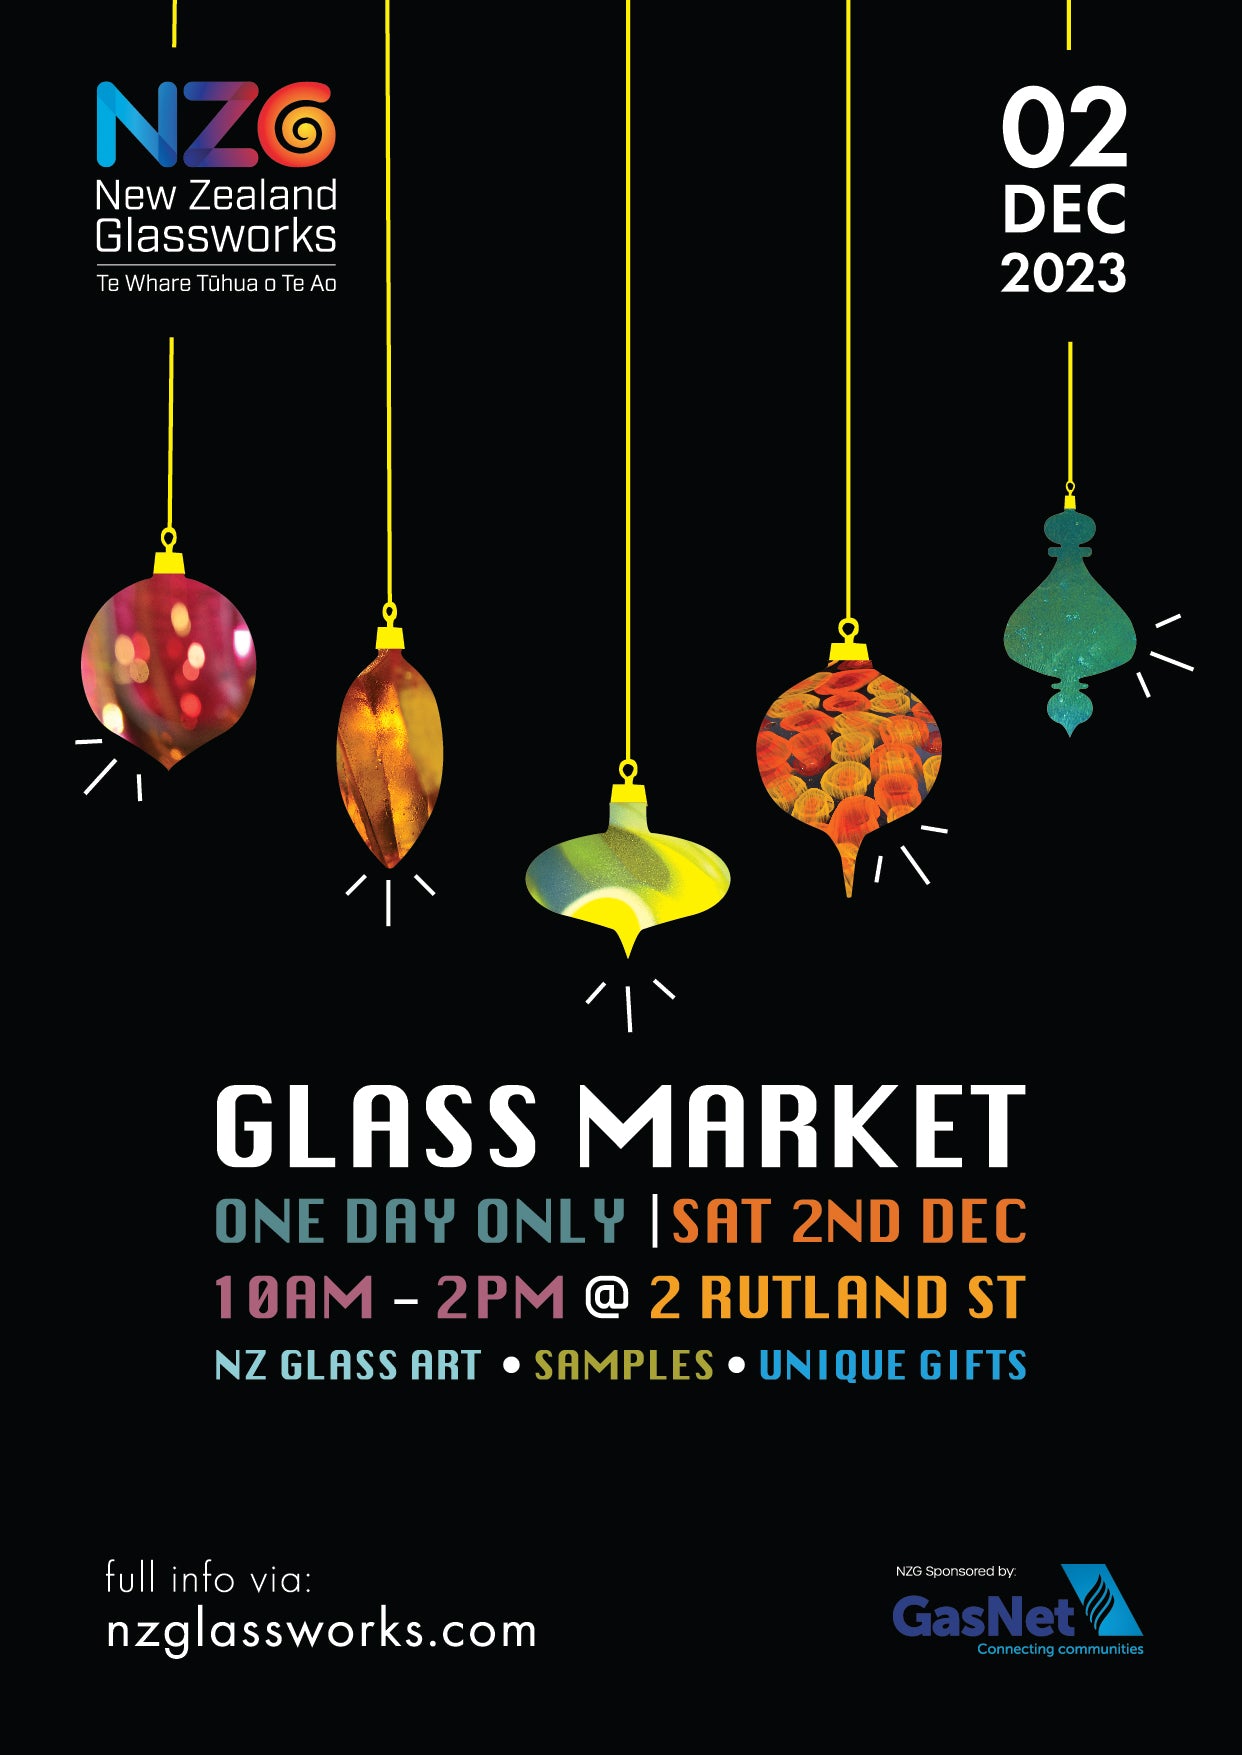 NZGlassworks Glass Market 2023